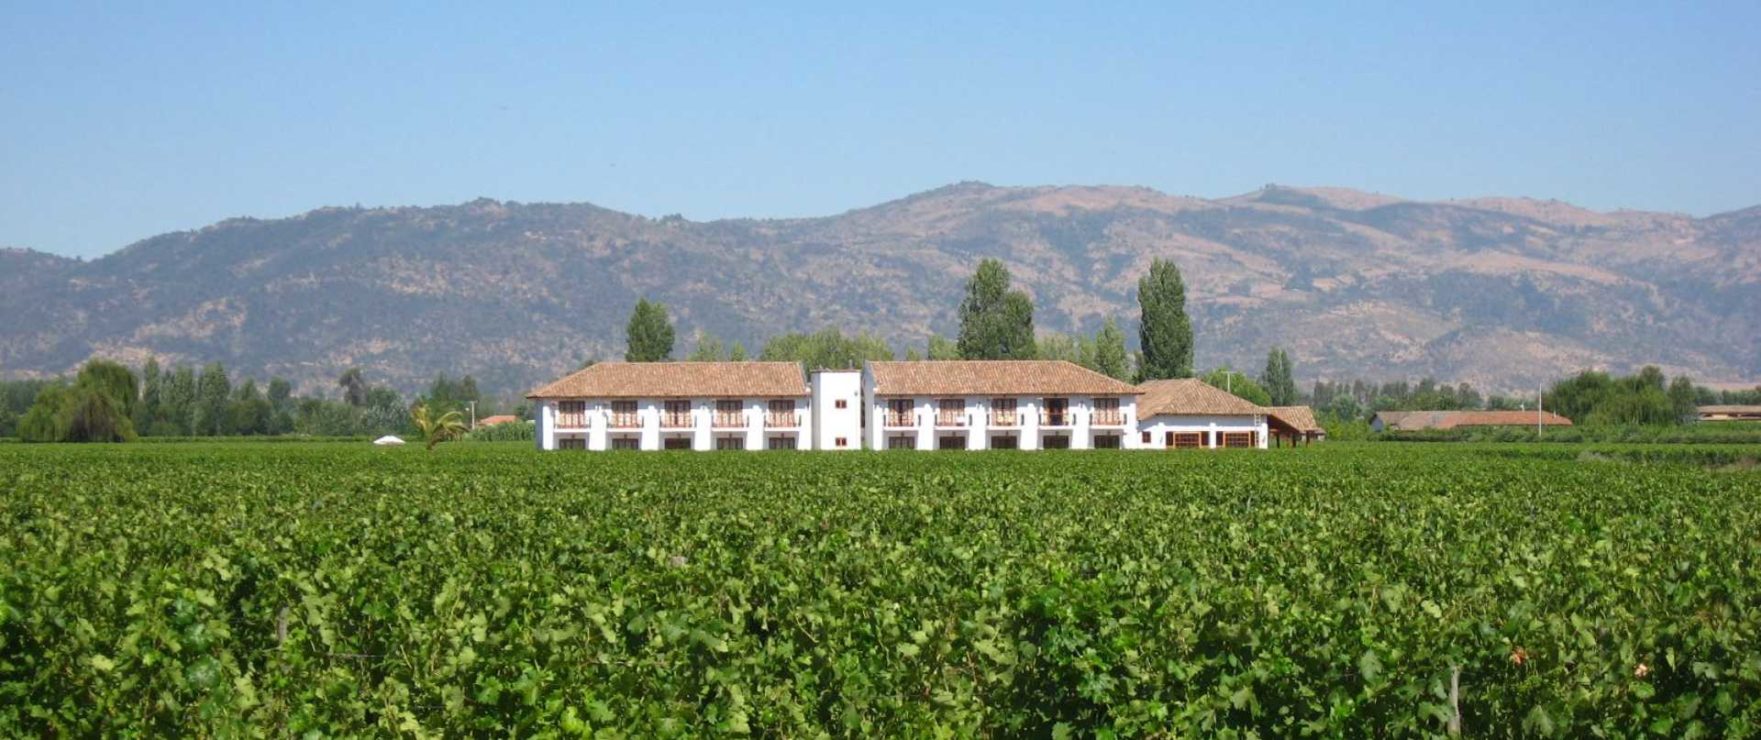 Chilean Vineyards